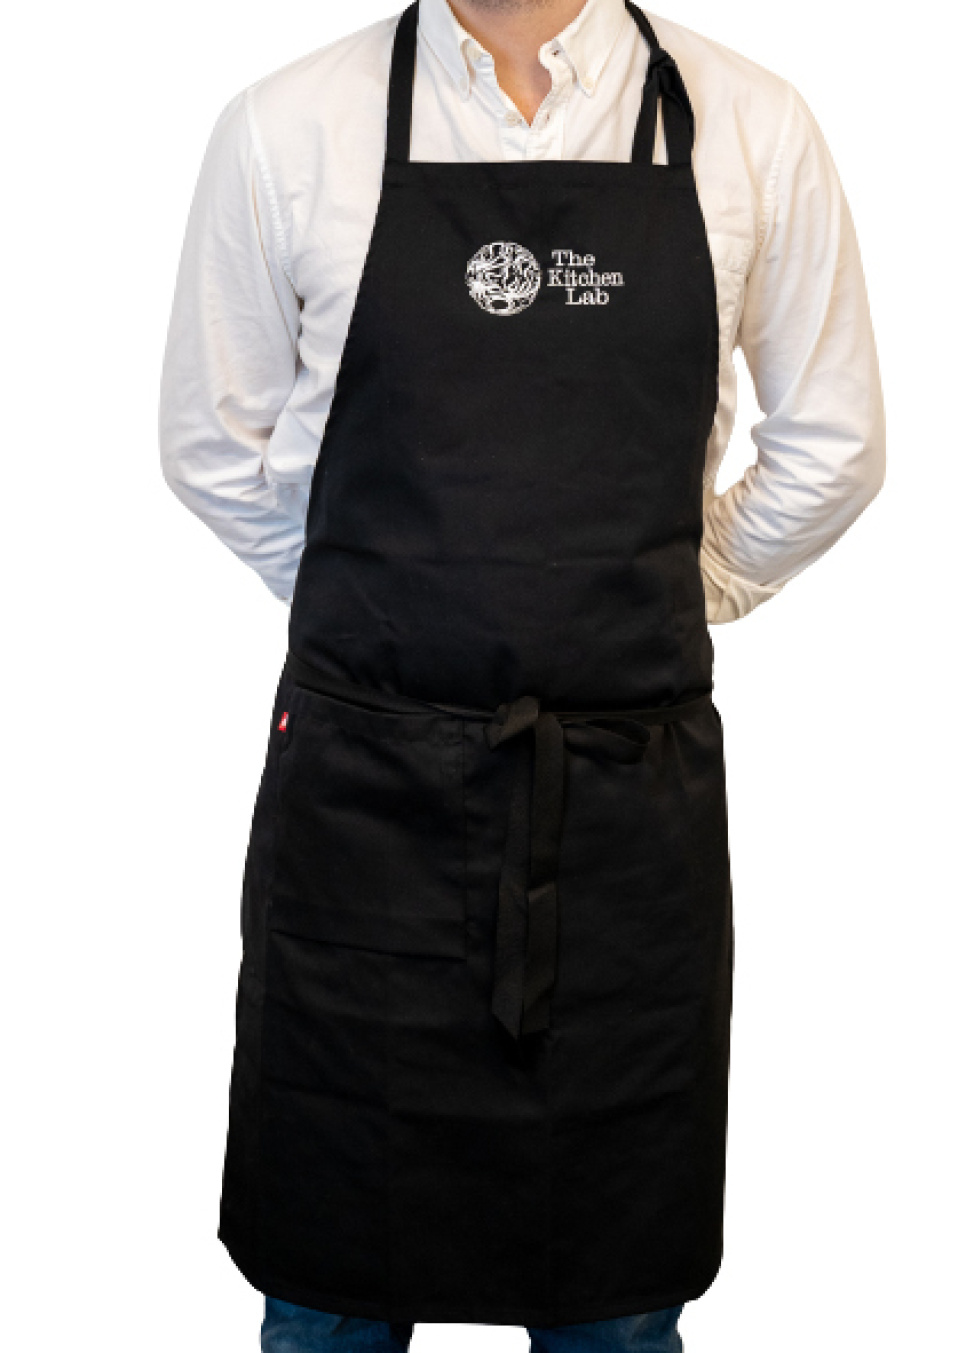 Brystplay forklæde med logo - KitchenLab i gruppen Madlavning / Køkken tekstiler / Forklæder hos The Kitchen Lab (1317-27450)